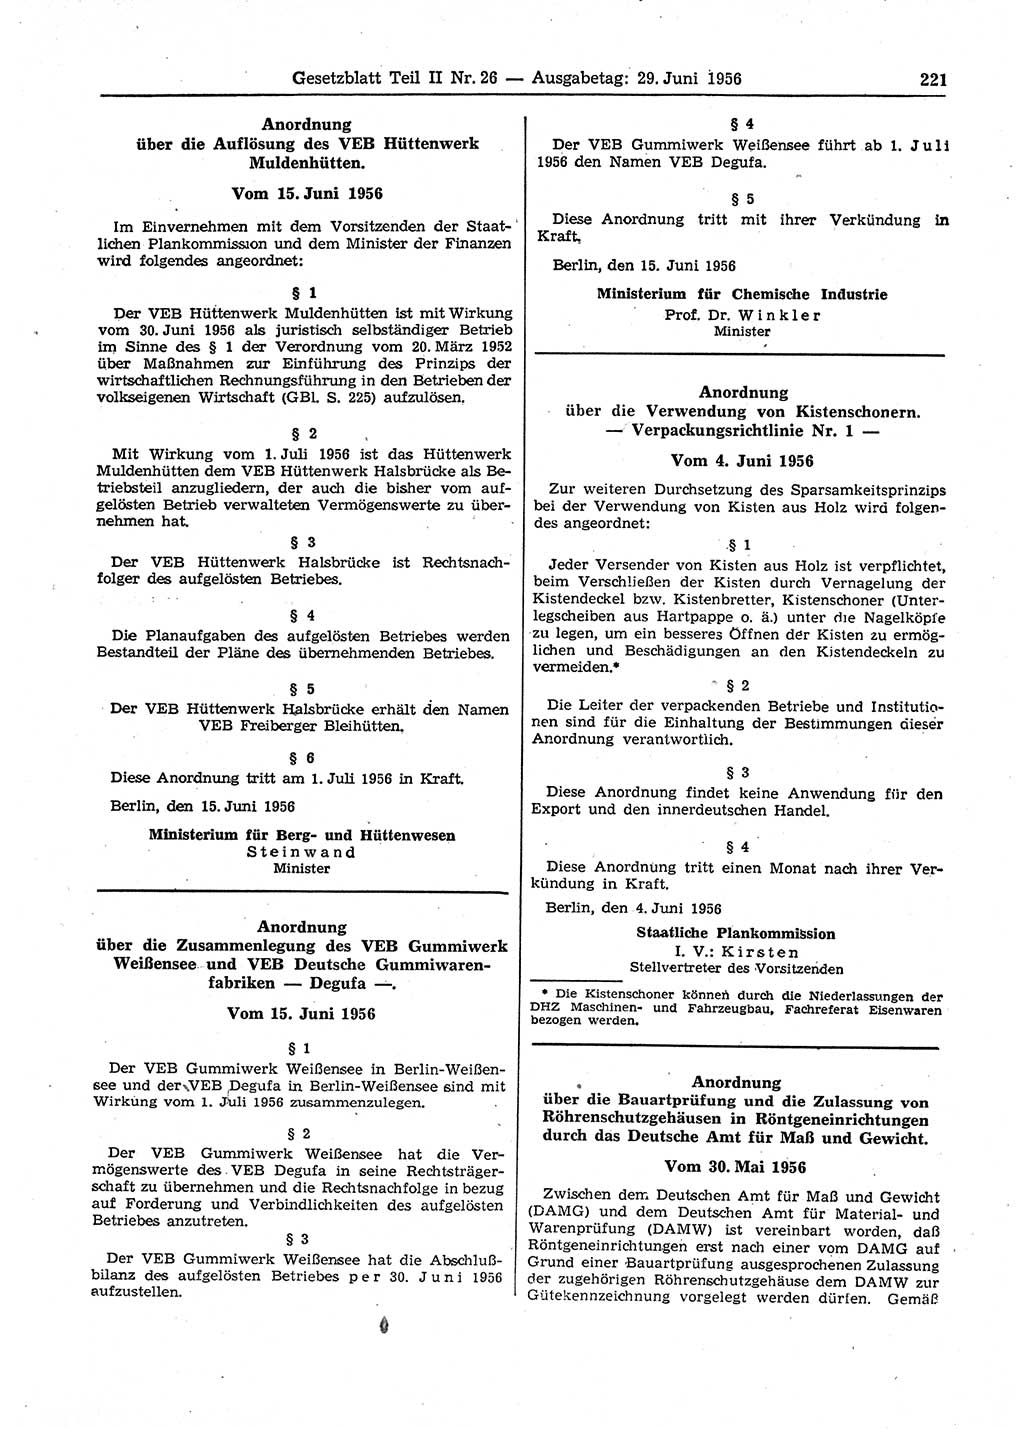 Gesetzblatt (GBl.) der Deutschen Demokratischen Republik (DDR) Teil ⅠⅠ 1956, Seite 221 (GBl. DDR ⅠⅠ 1956, S. 221)